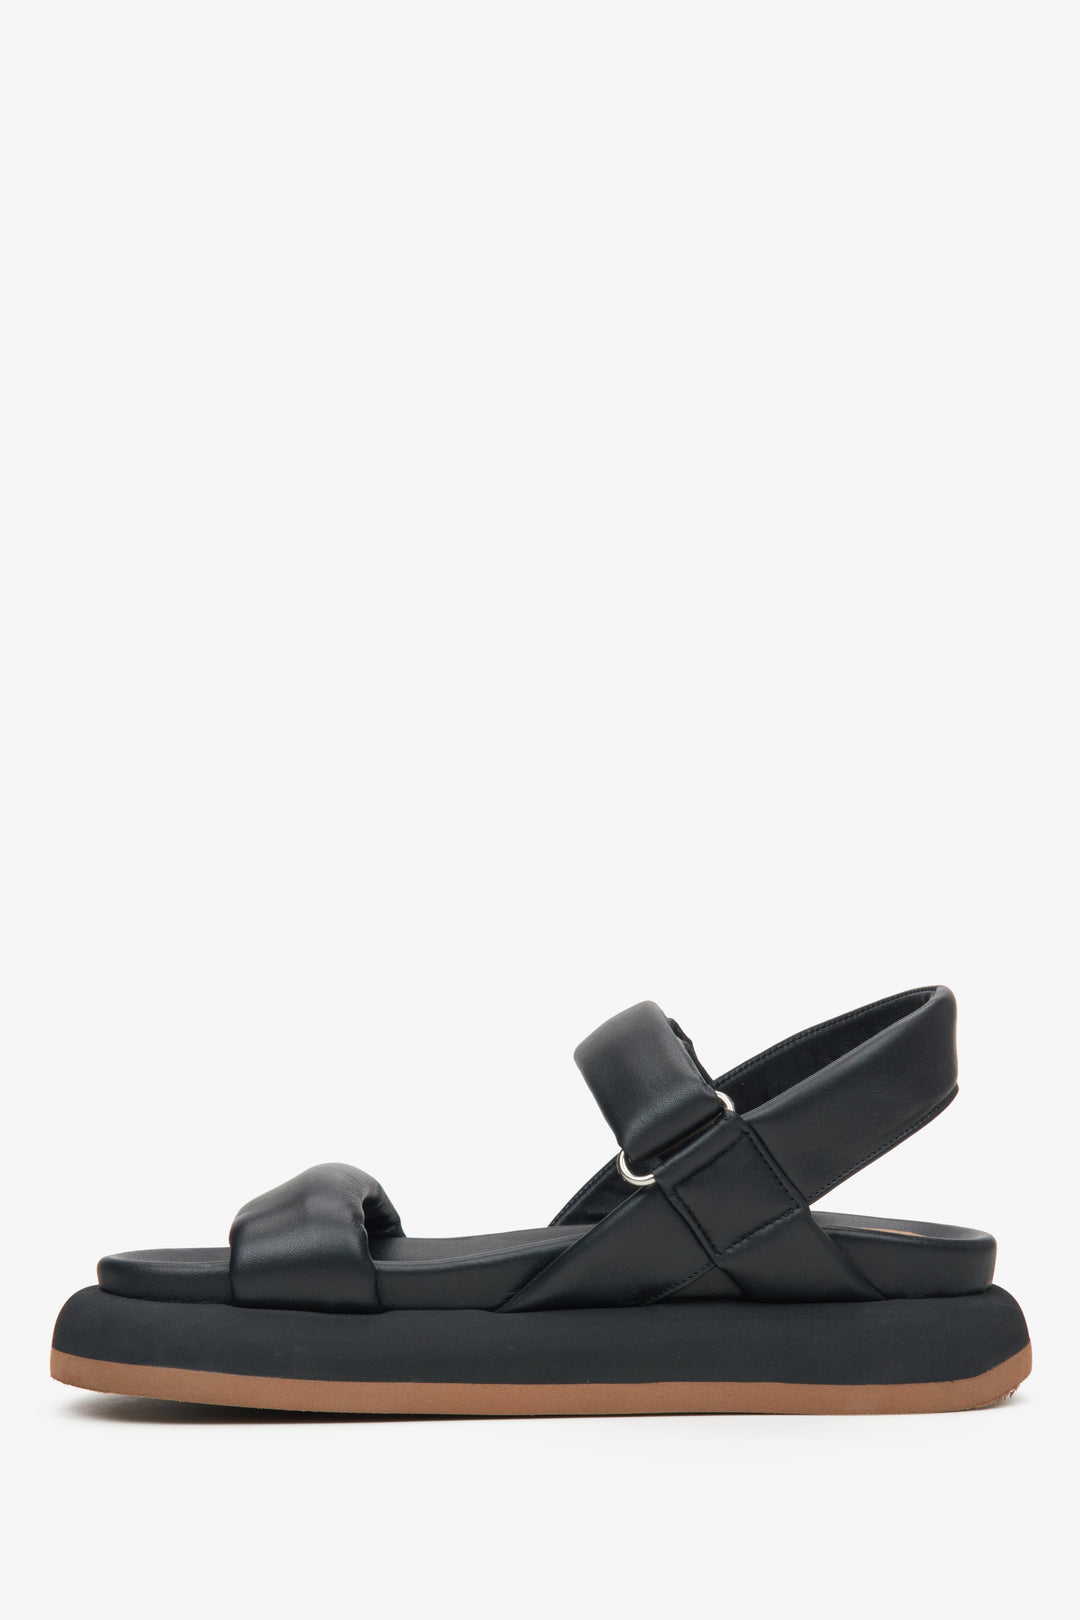 Comfortable women's black sandals by Estro - shoe profile.